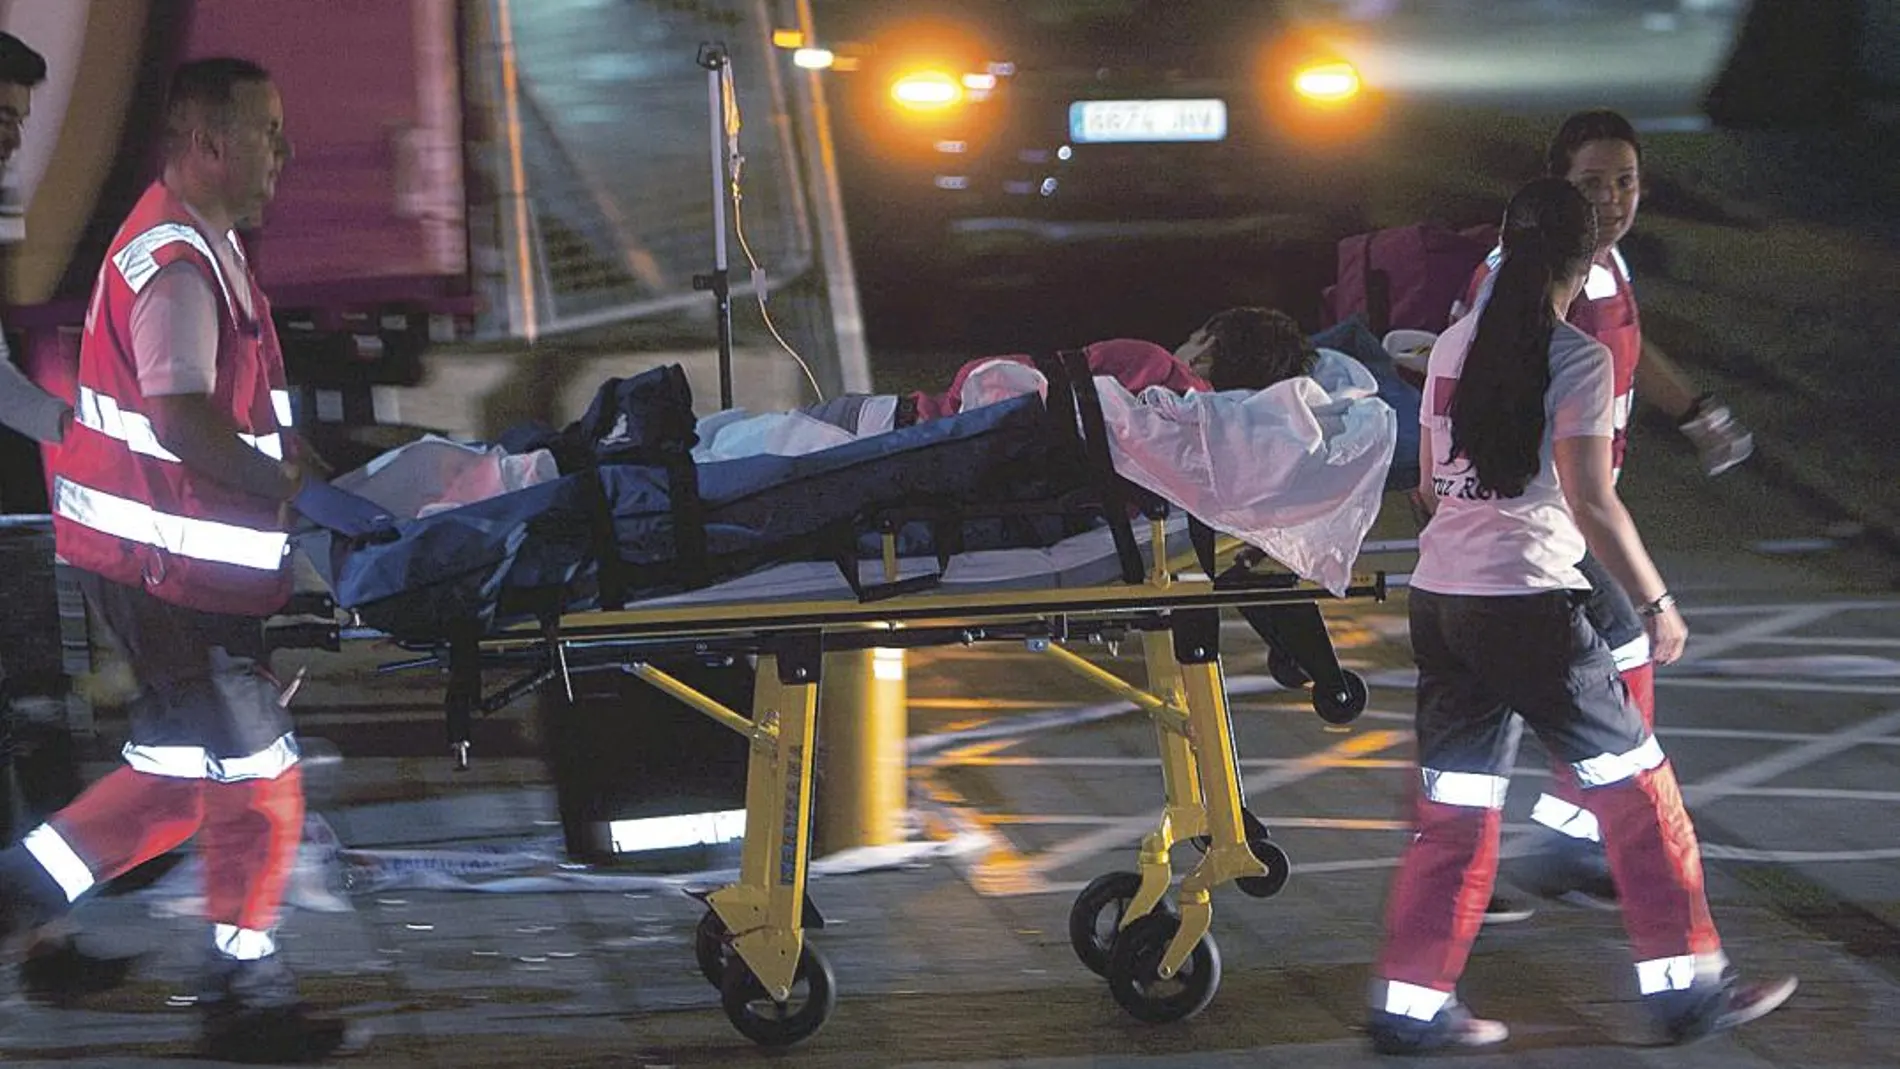 Los equipos de rescate trasladaron a los heridos al hospital Álvaro Cunqueiro de Vigo/Foto: Efe